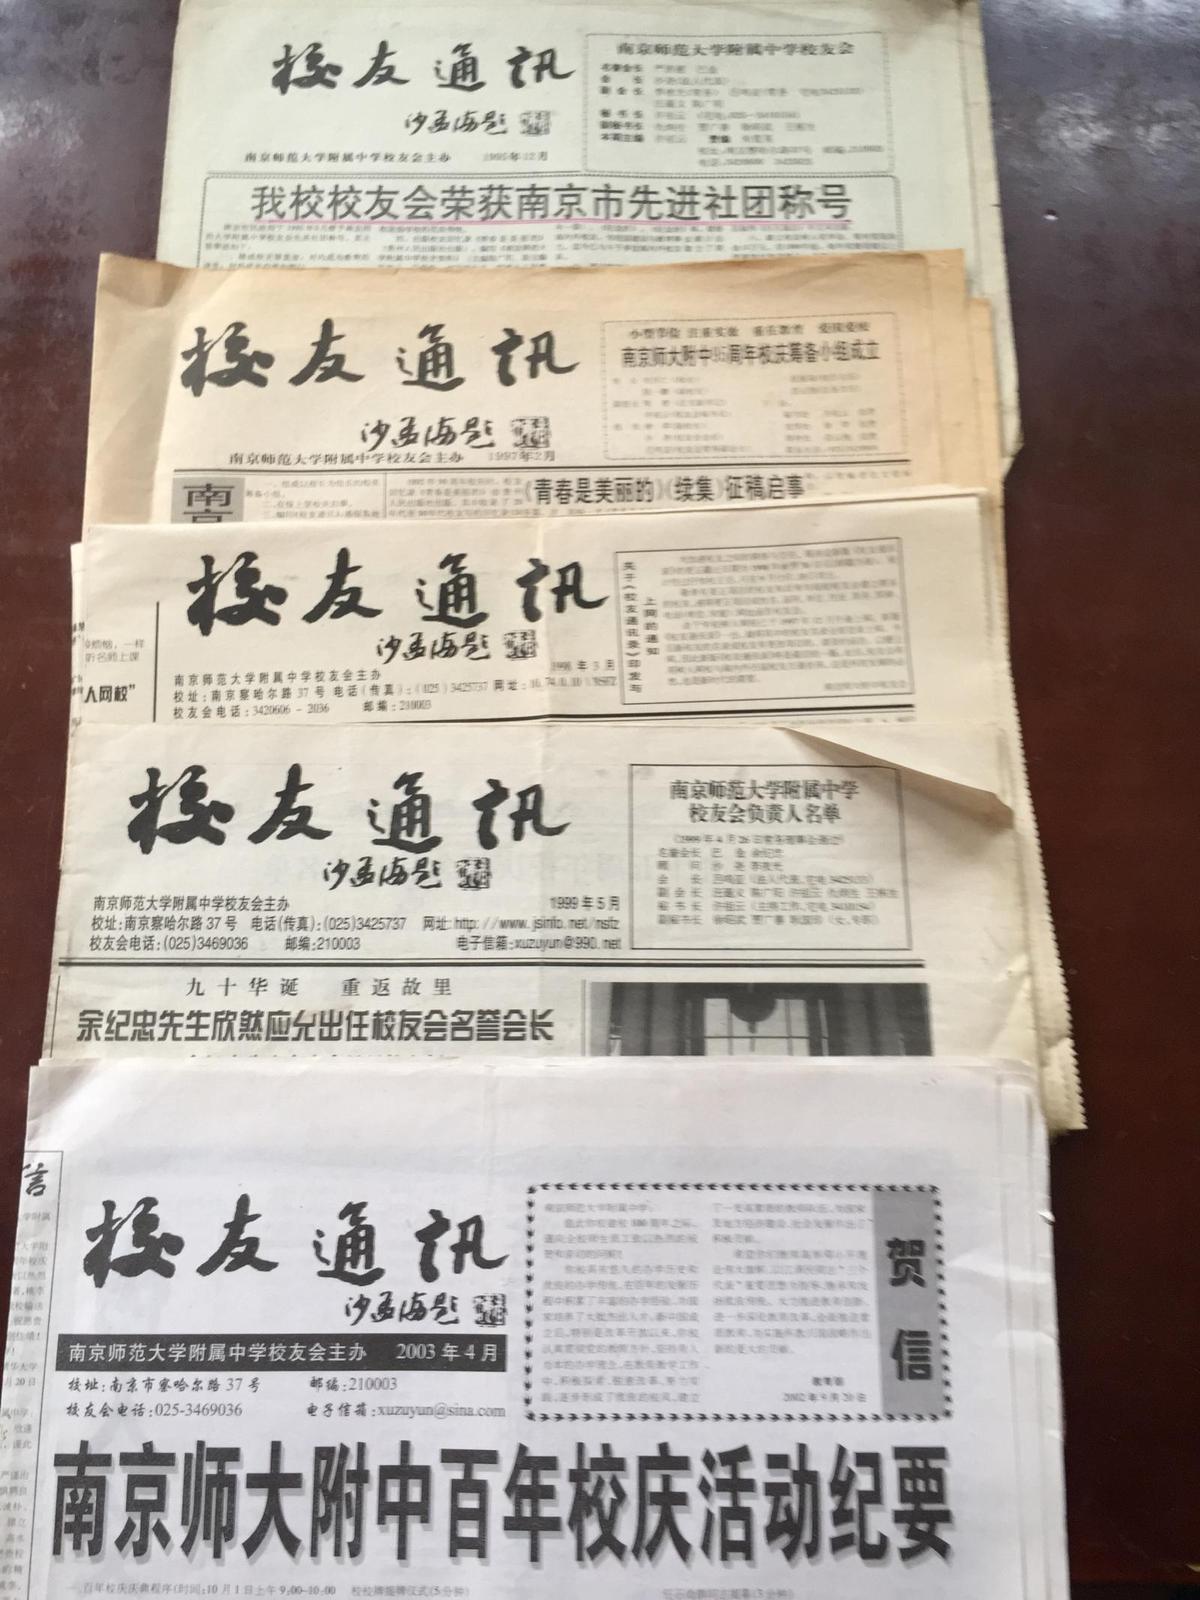 南京师范大学附属中学校友通讯1995年12月、1997年2月、1998年3月、1999年5月、2003年4月（共5张报纸  折叠邮寄）